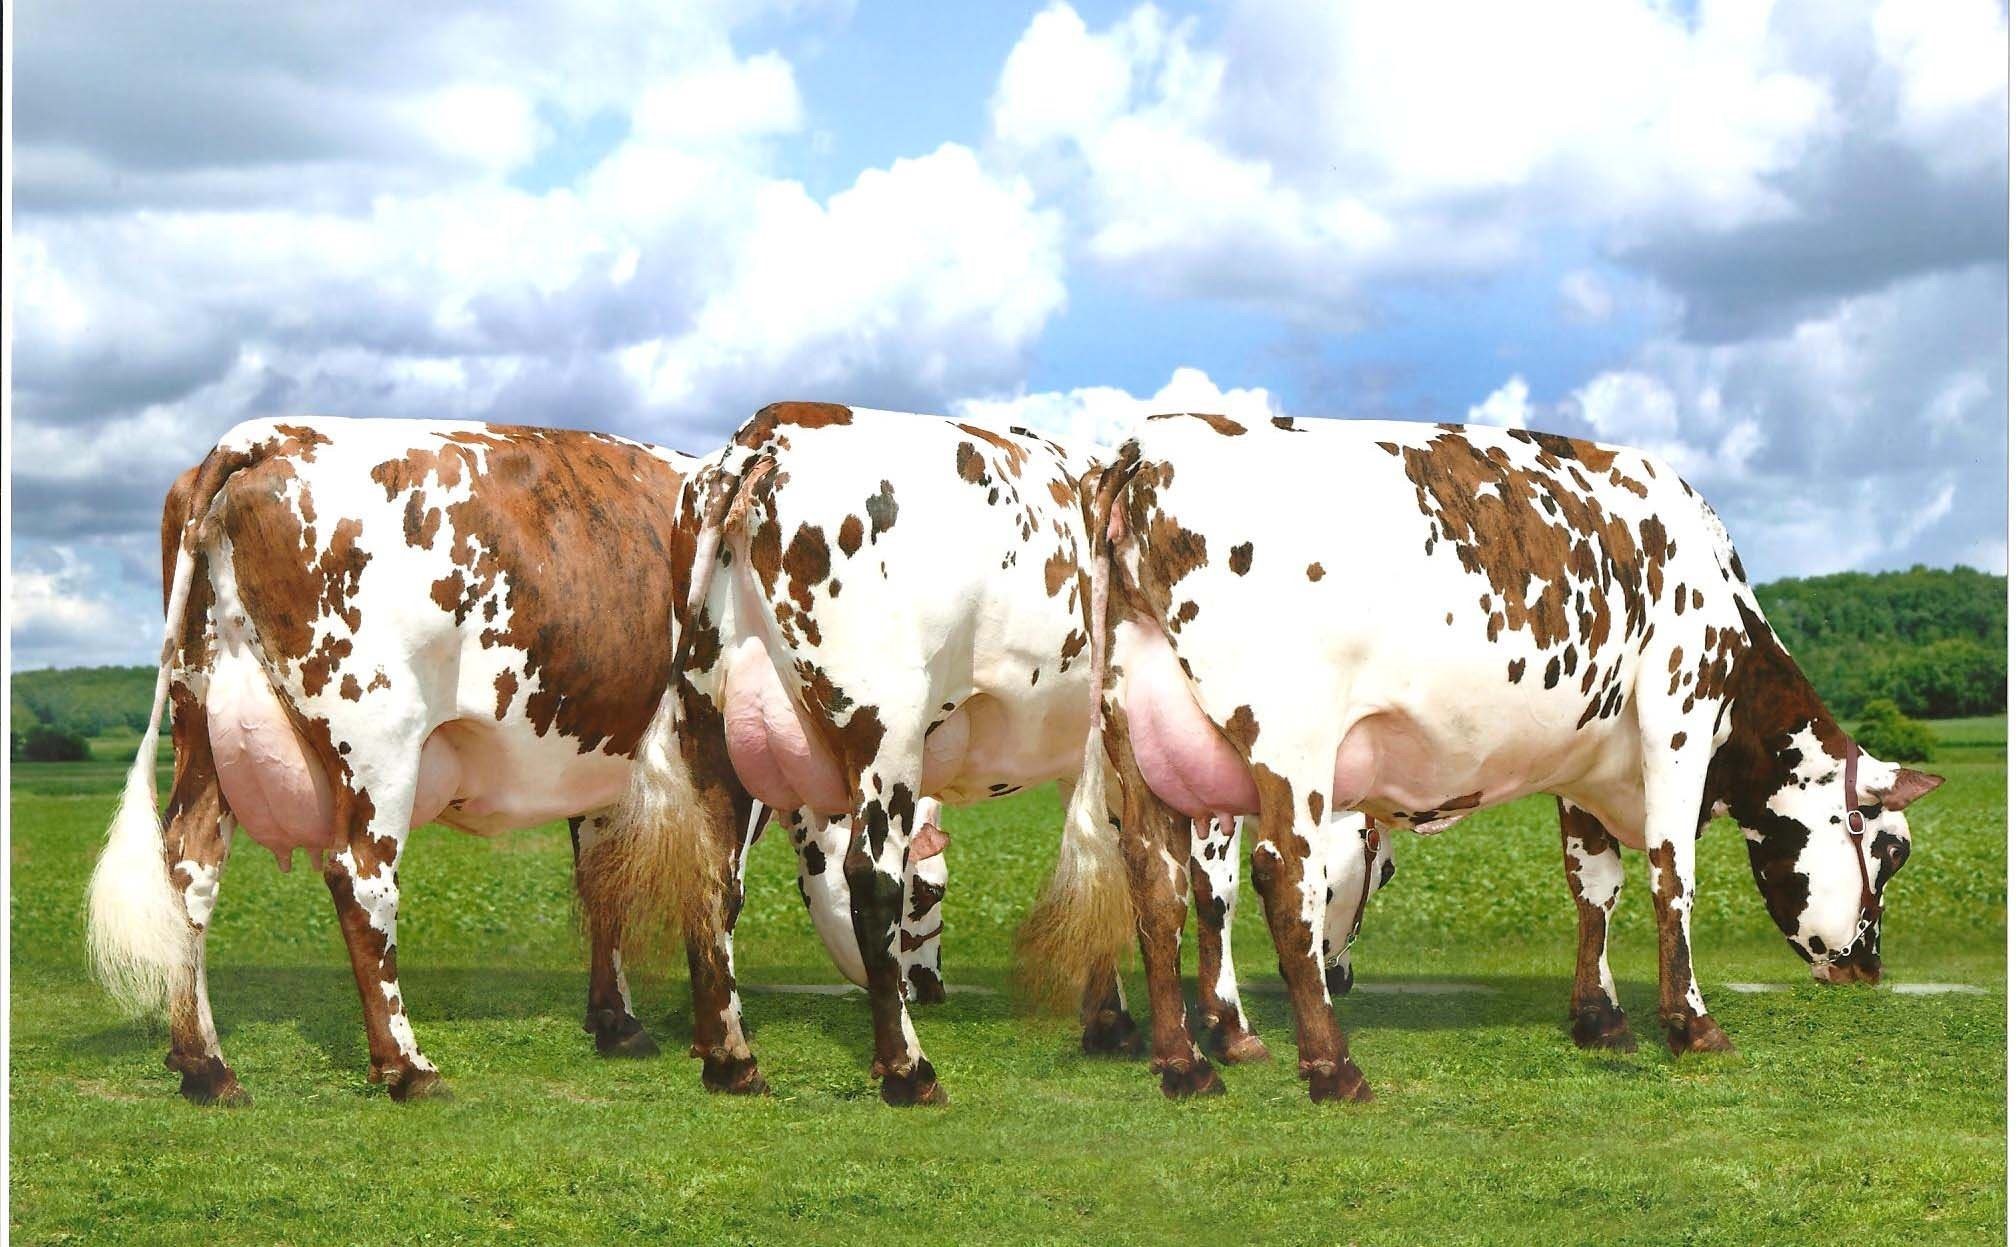 Красно пестрая порода коров фото